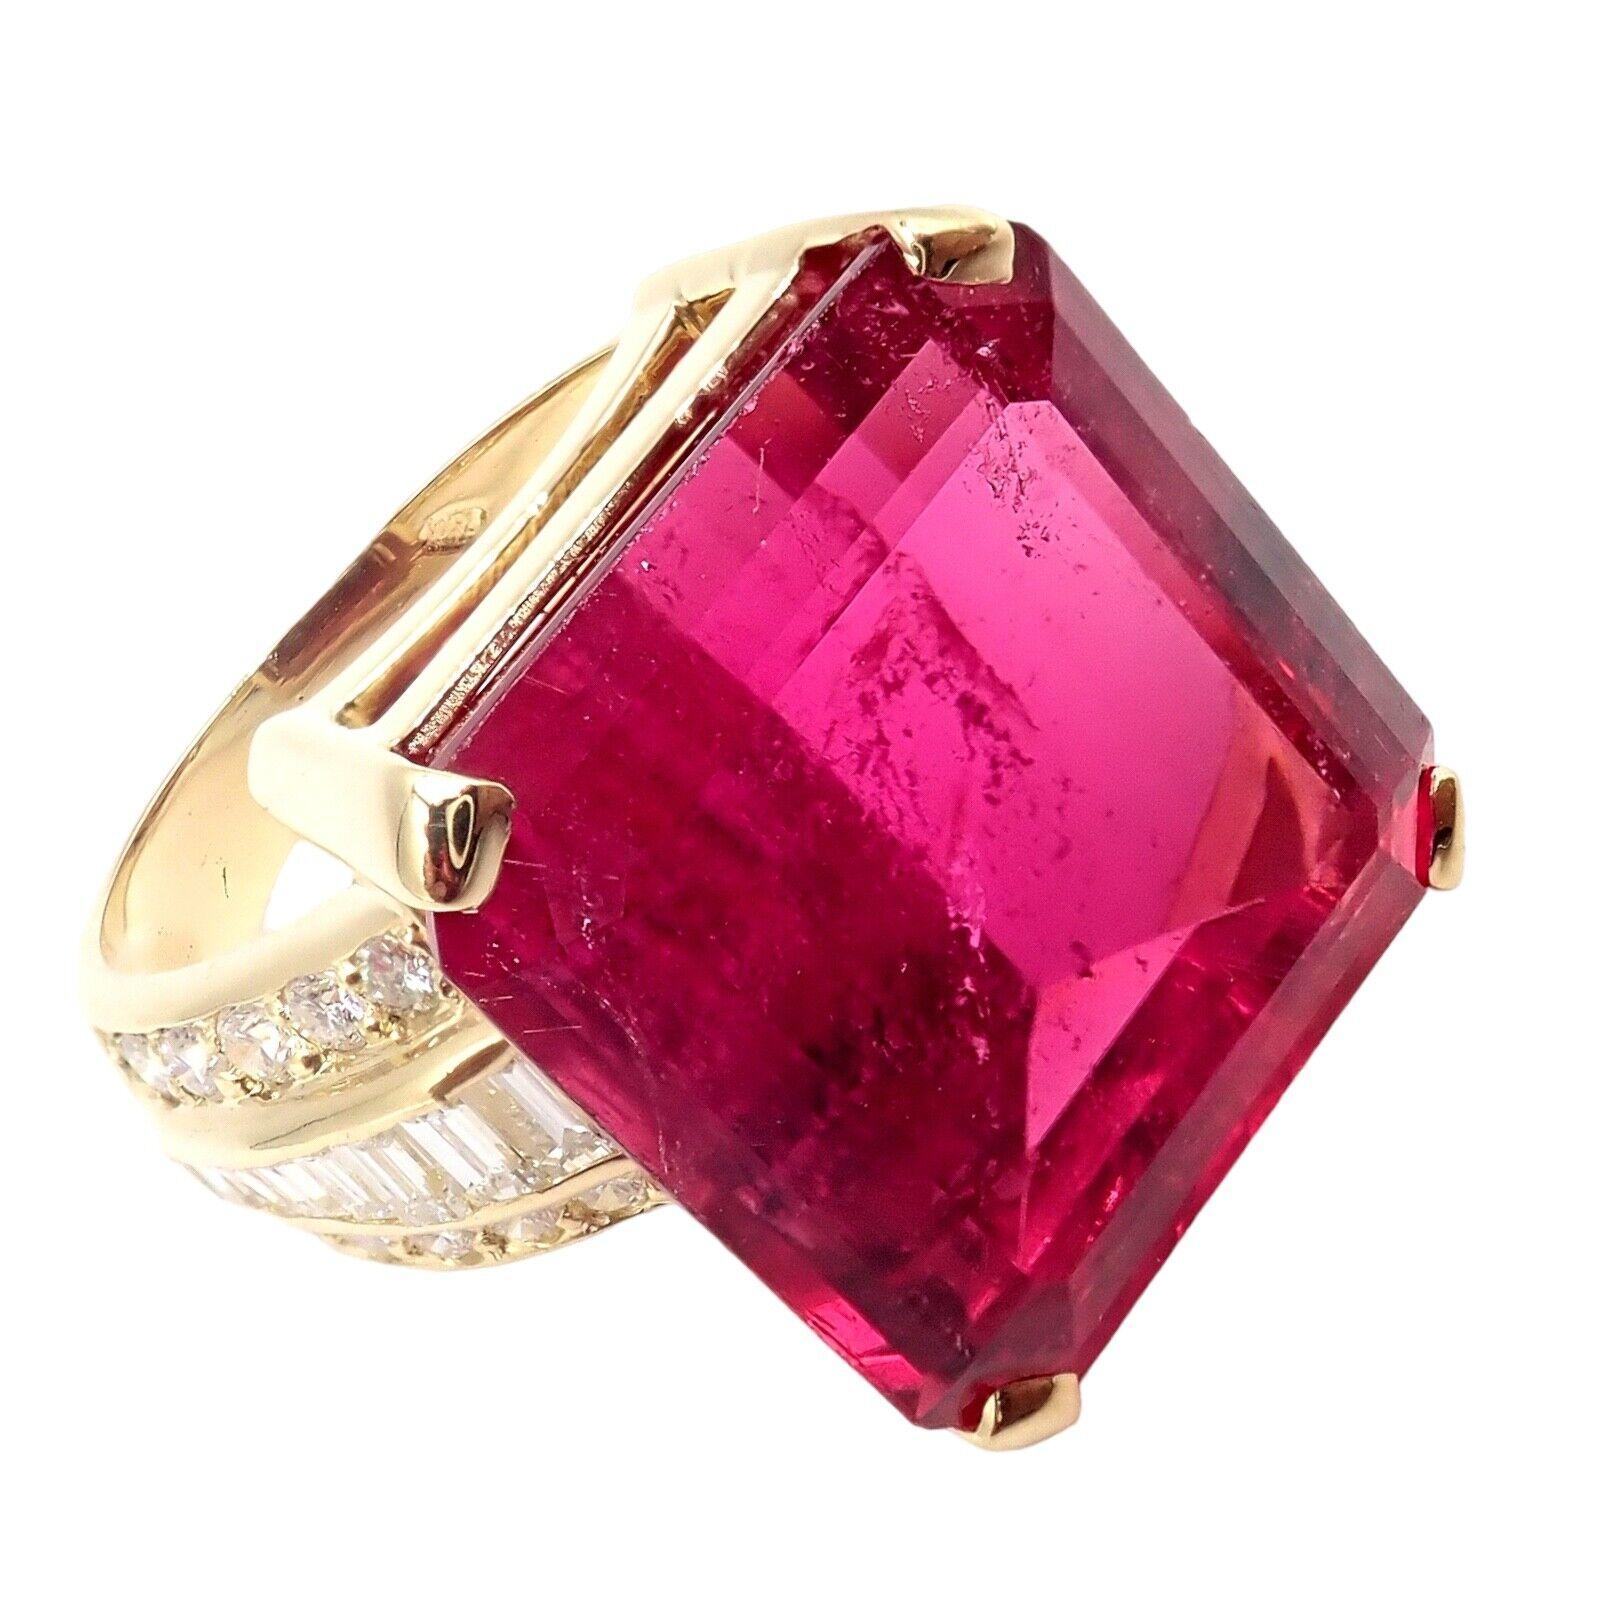 H. Stern Diamond Large Pink Tourmaline Yellow Gold Statement Ring 1